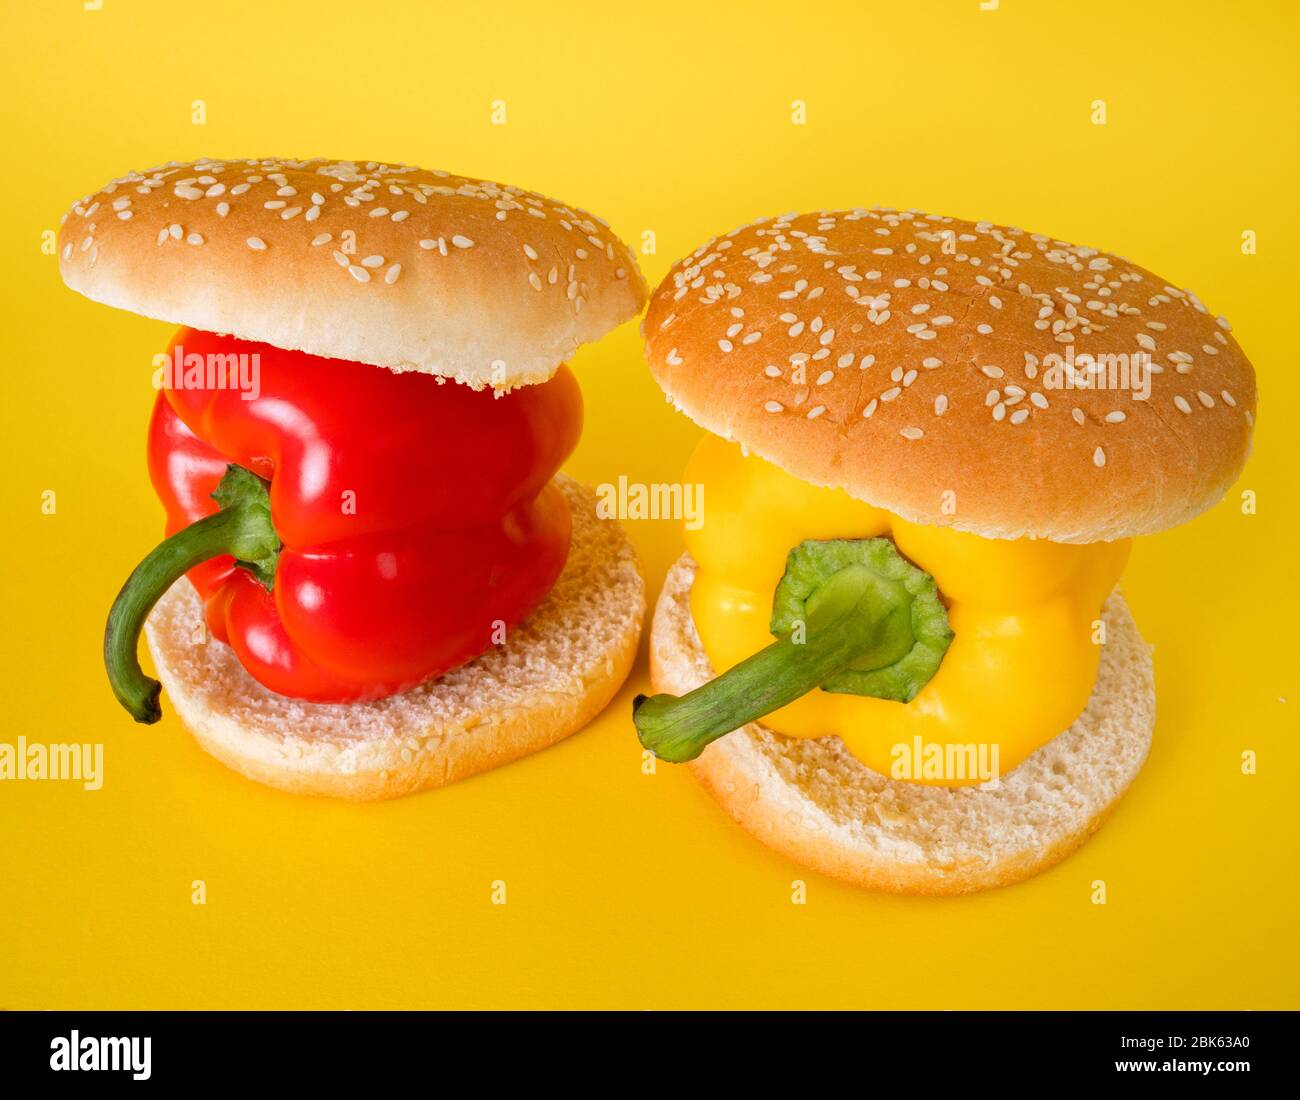 Hamburger avec paprika ou poivre frais. Concept de hamburger végétarien. Concept de nourriture végétale saine. Hamburger avec paprika ou poivre frais. Banque D'Images